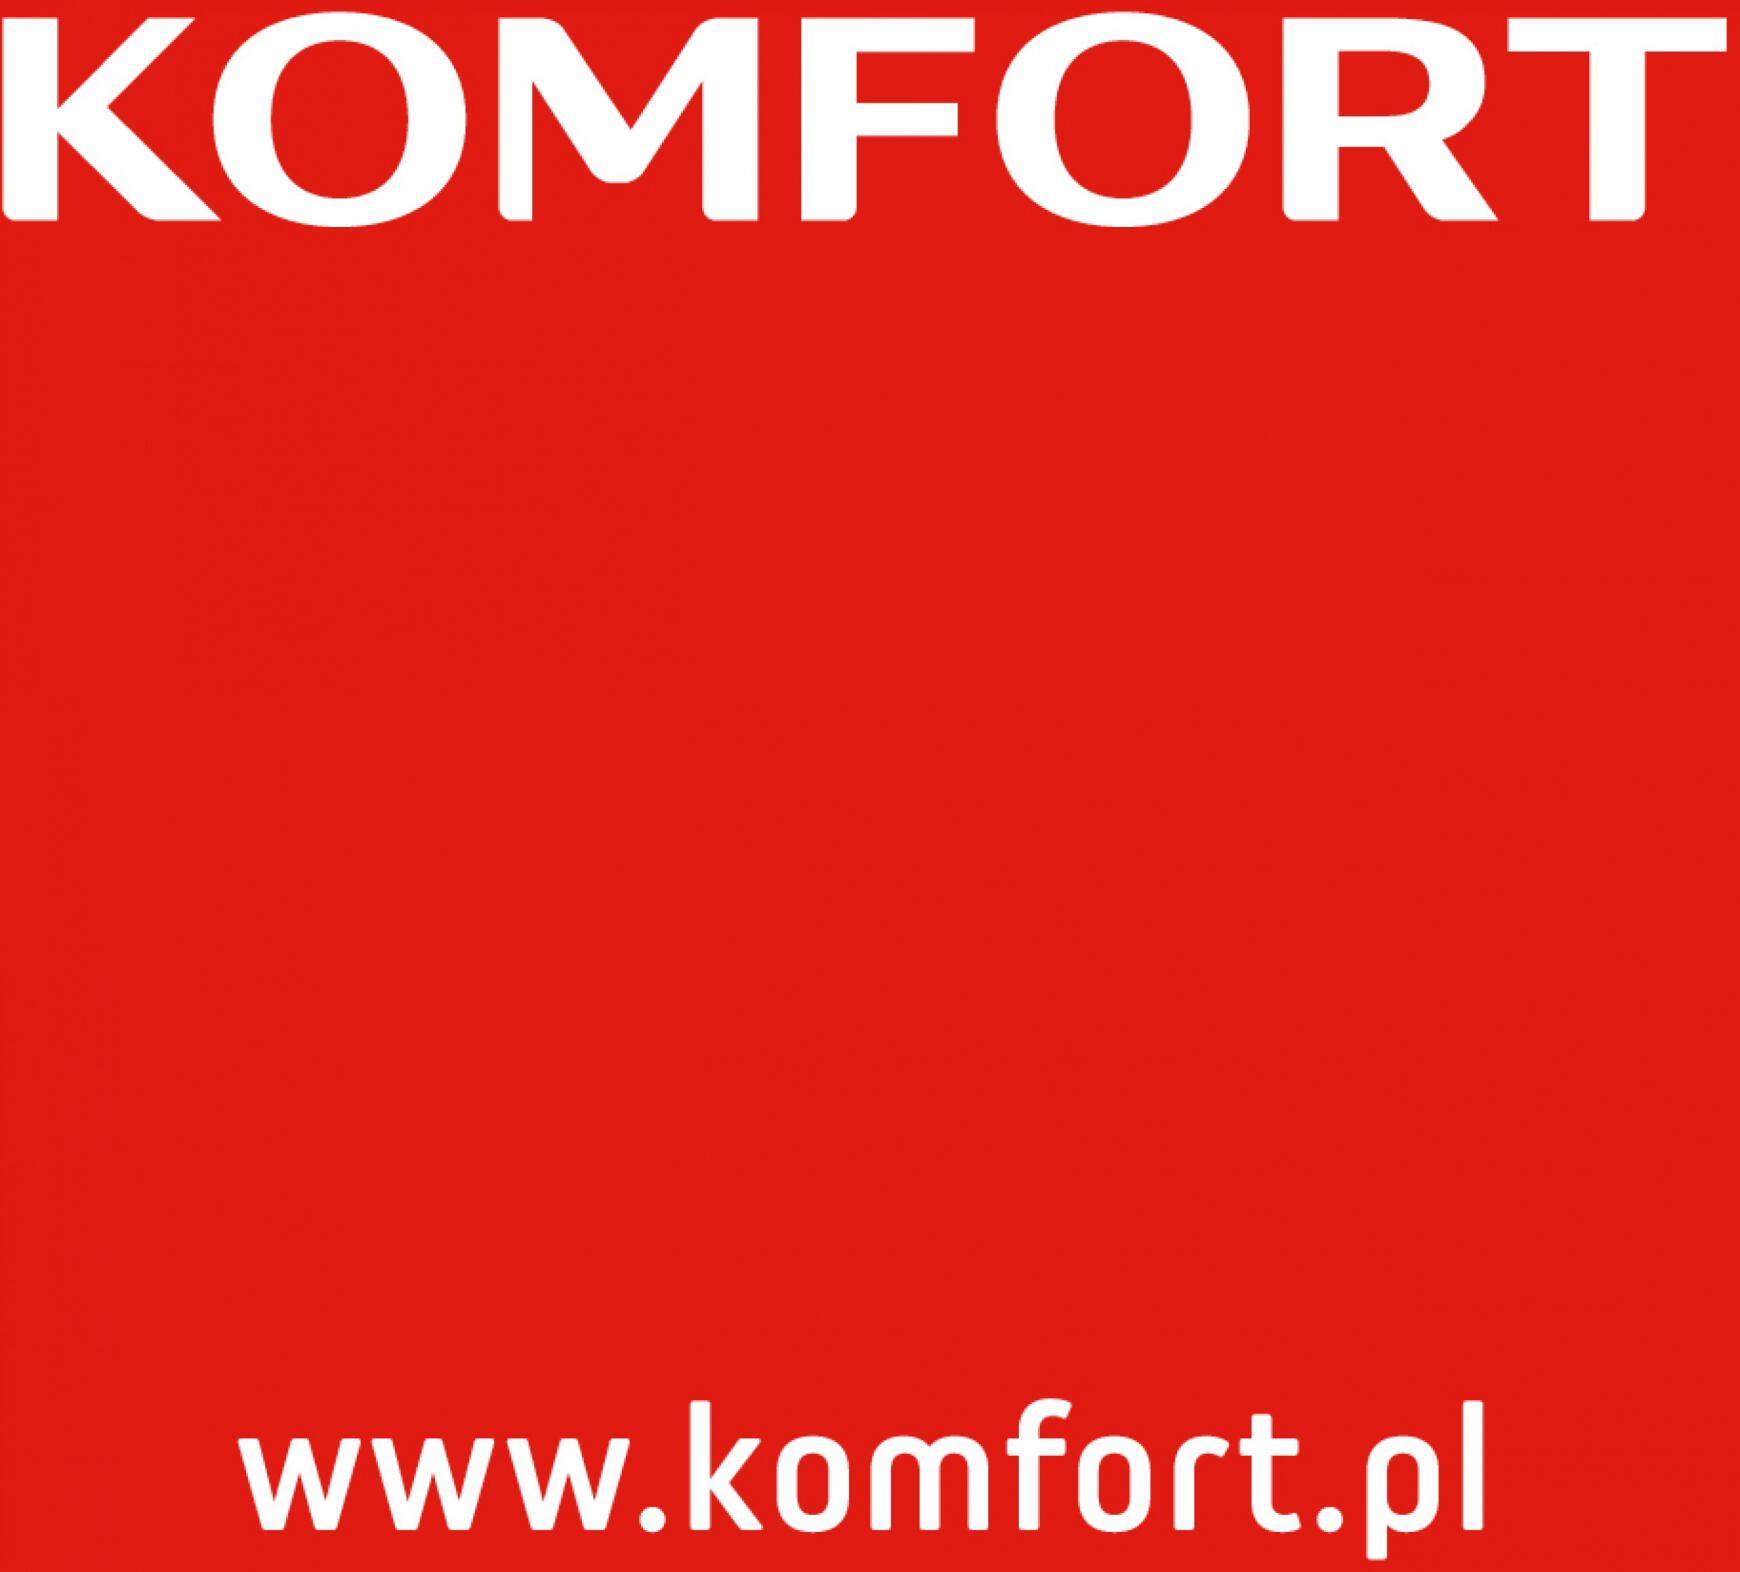 komfort - Komfort - Katalog kuchnie - page: 104